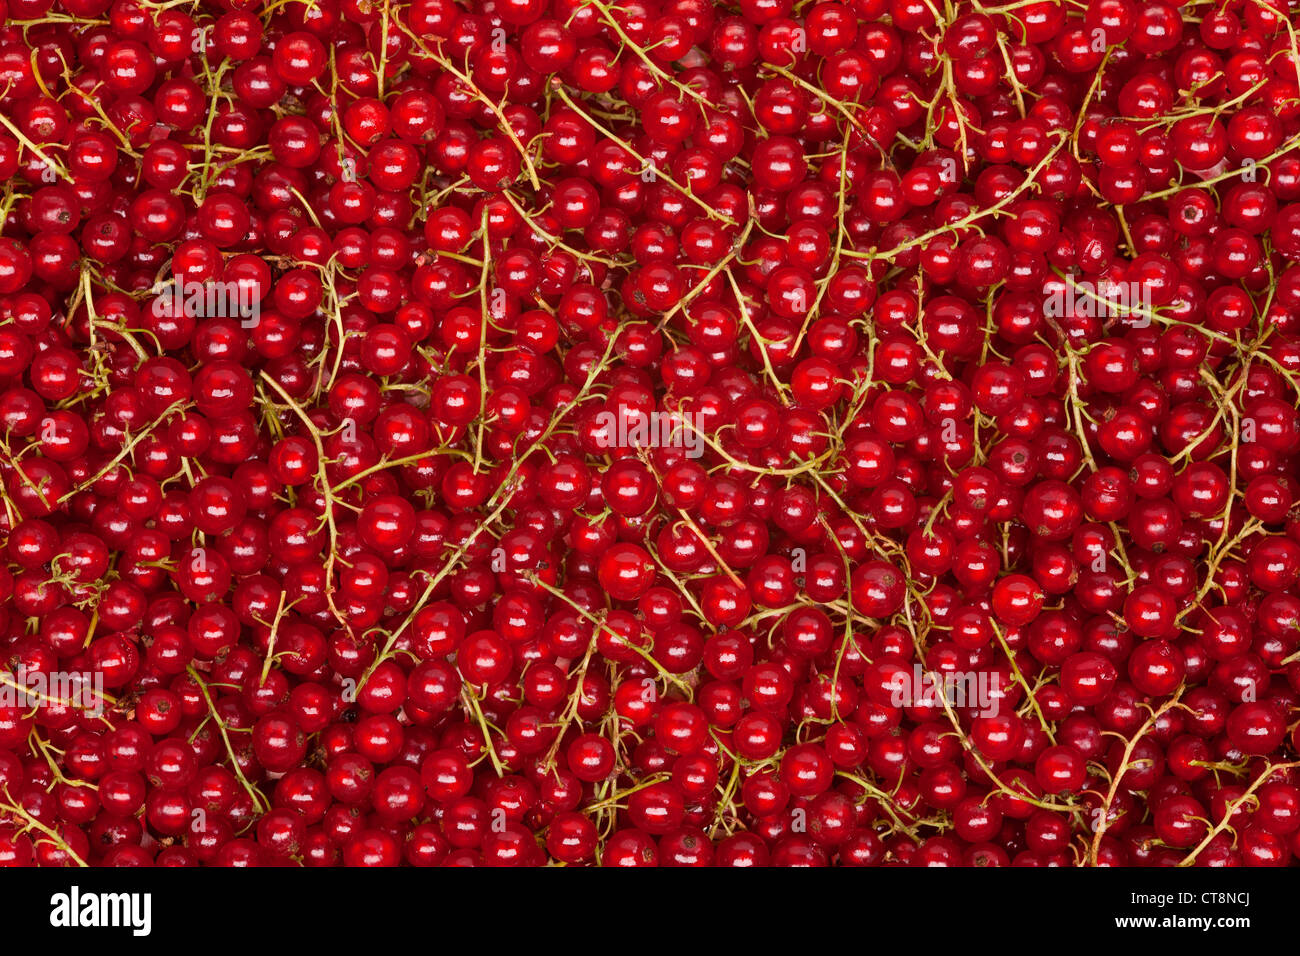 Johannisbeer-Hintergrund mit grünen Stielen, natürliche rote Textur Stockfoto